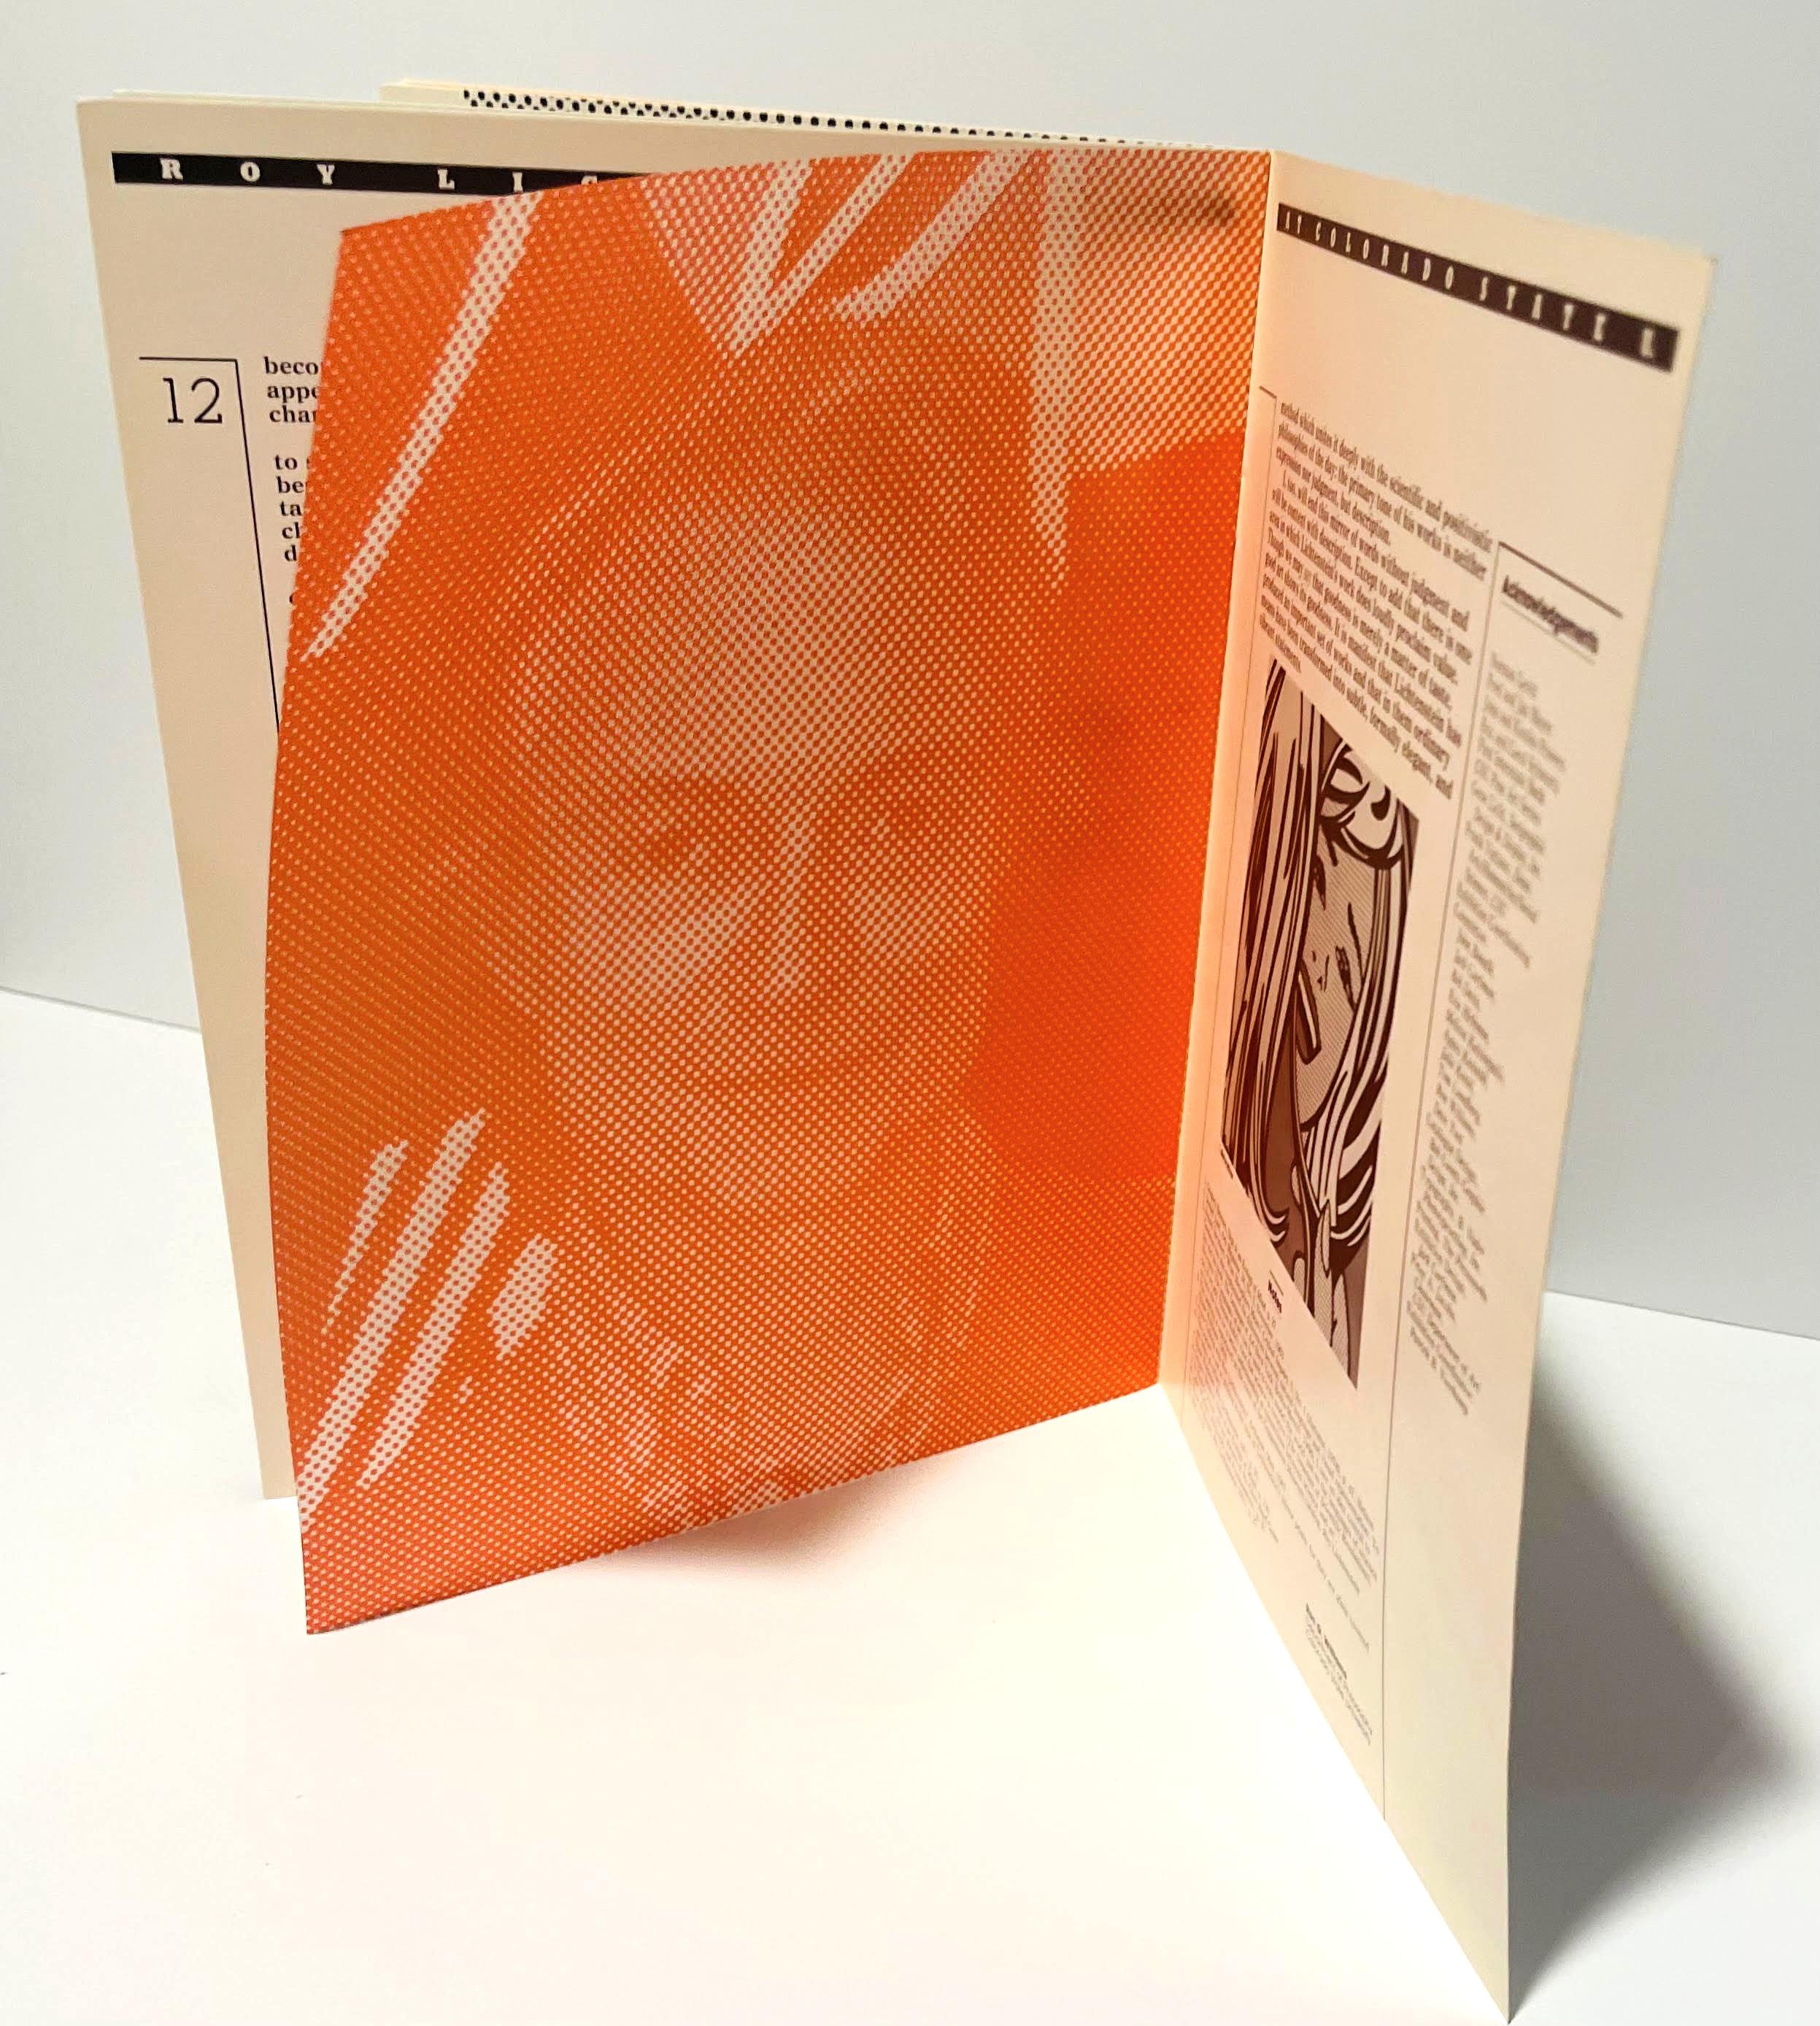 Roy Lichtenstein at CSU, rarely seen exhibition catalogue For Sale 6